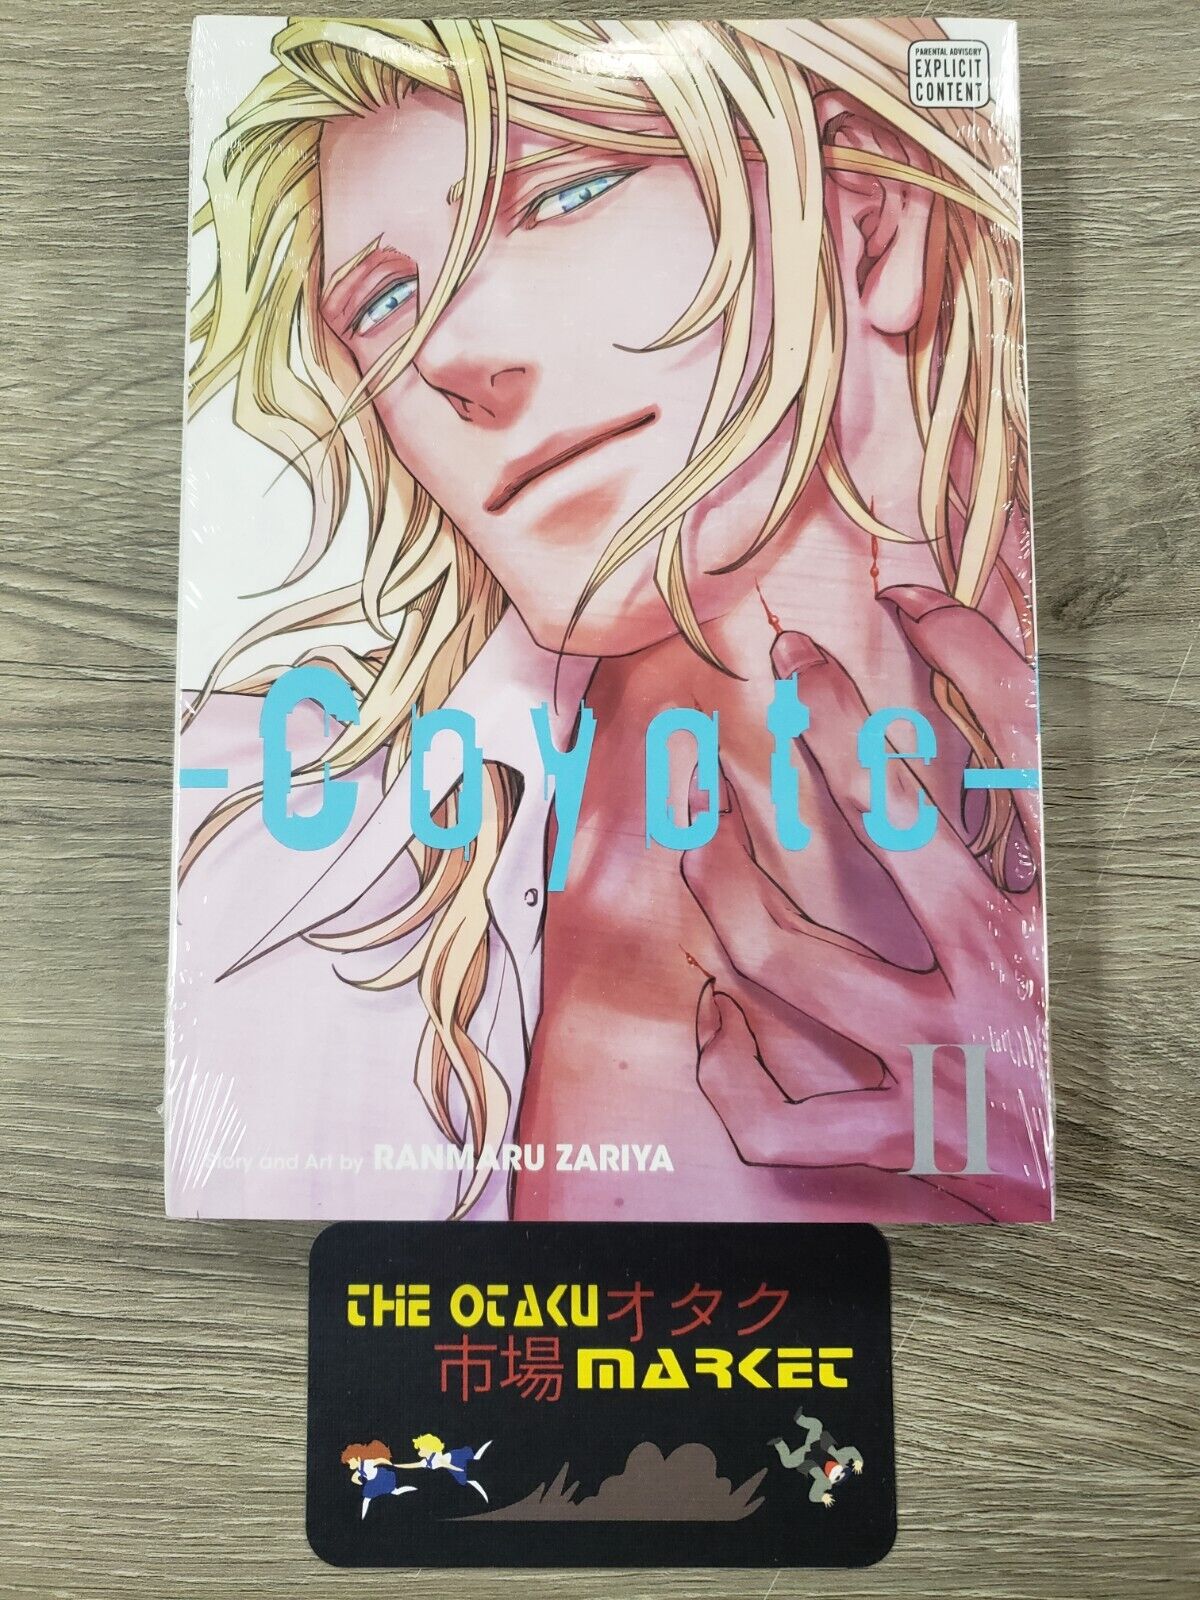 Coyote vol 2 by Ranmaru Zariya / New Yaoi manga from Sublime